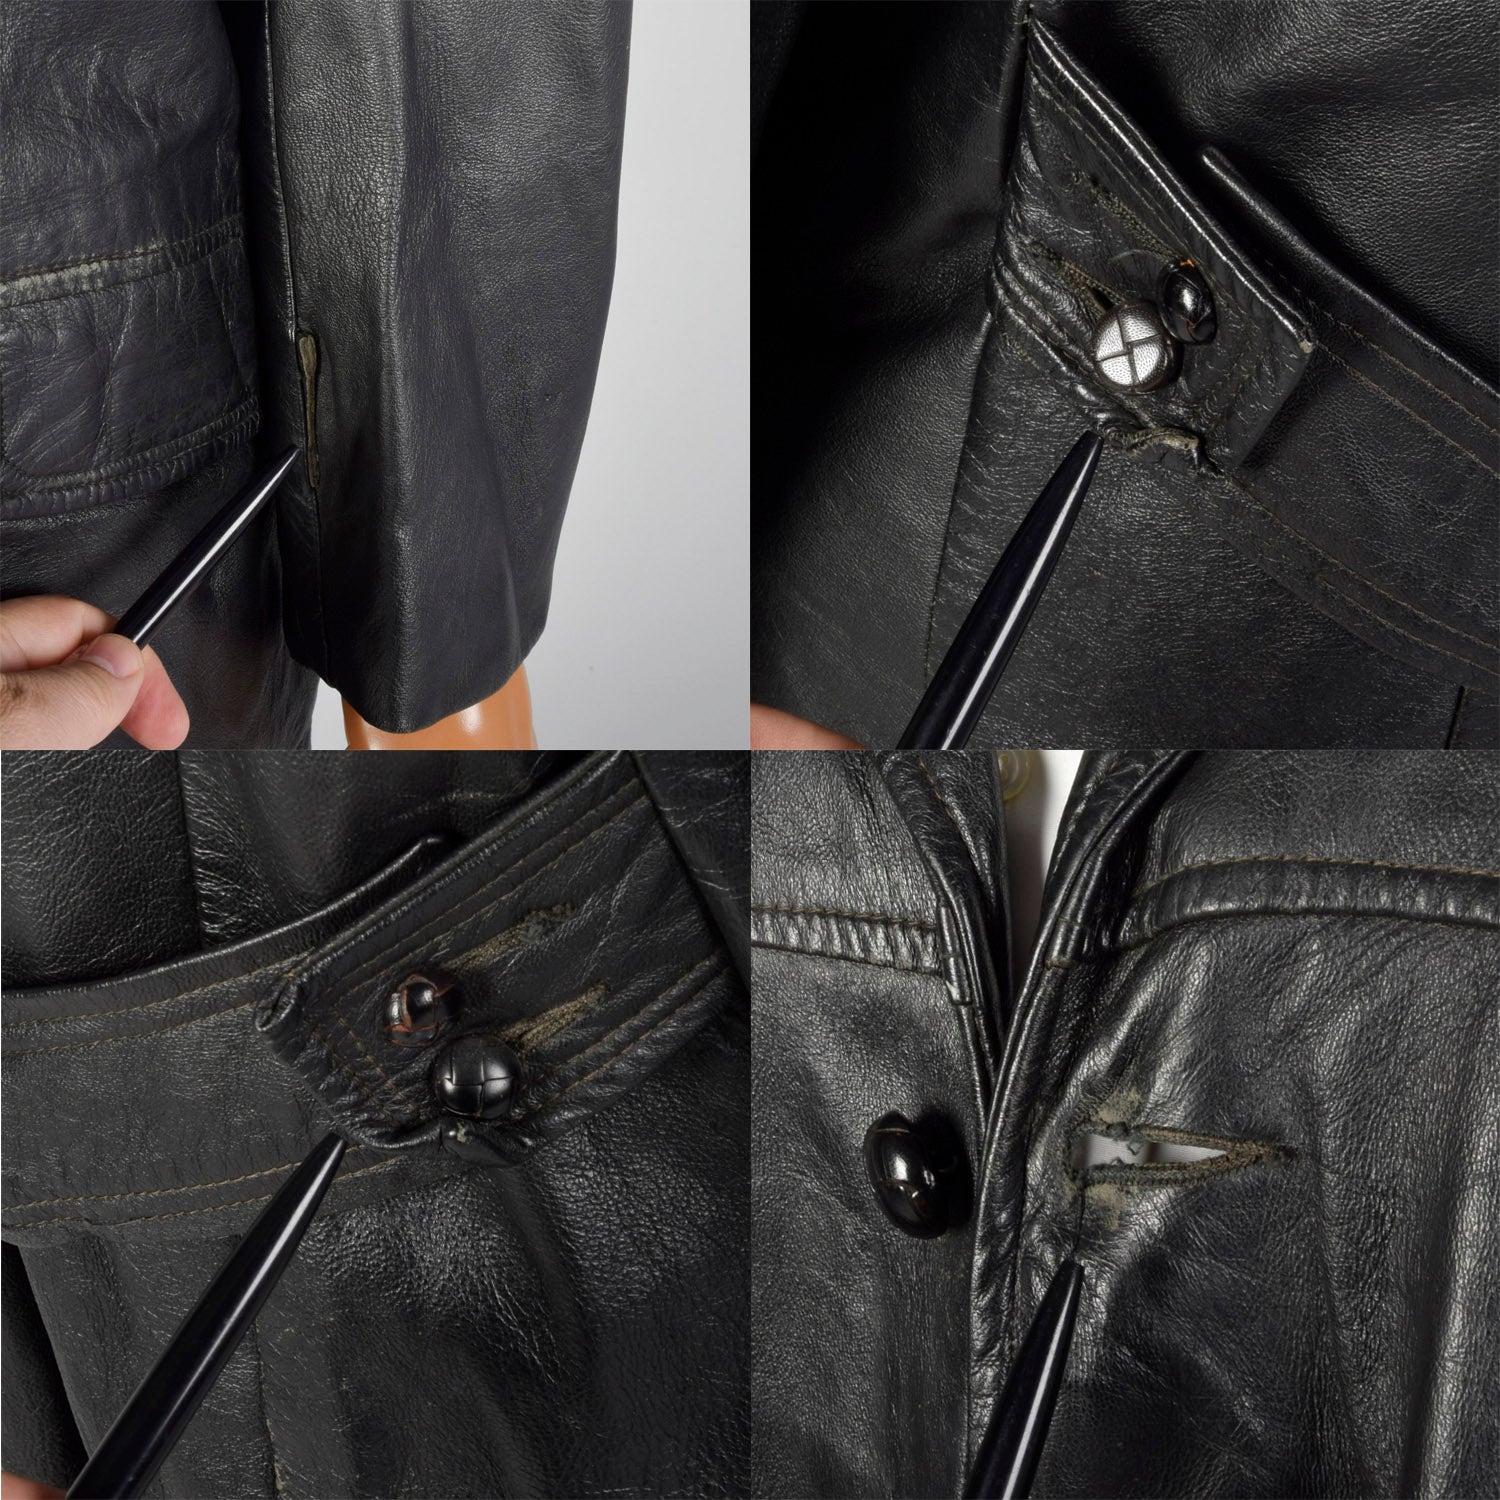 Large 1950s Black Leather Jacket